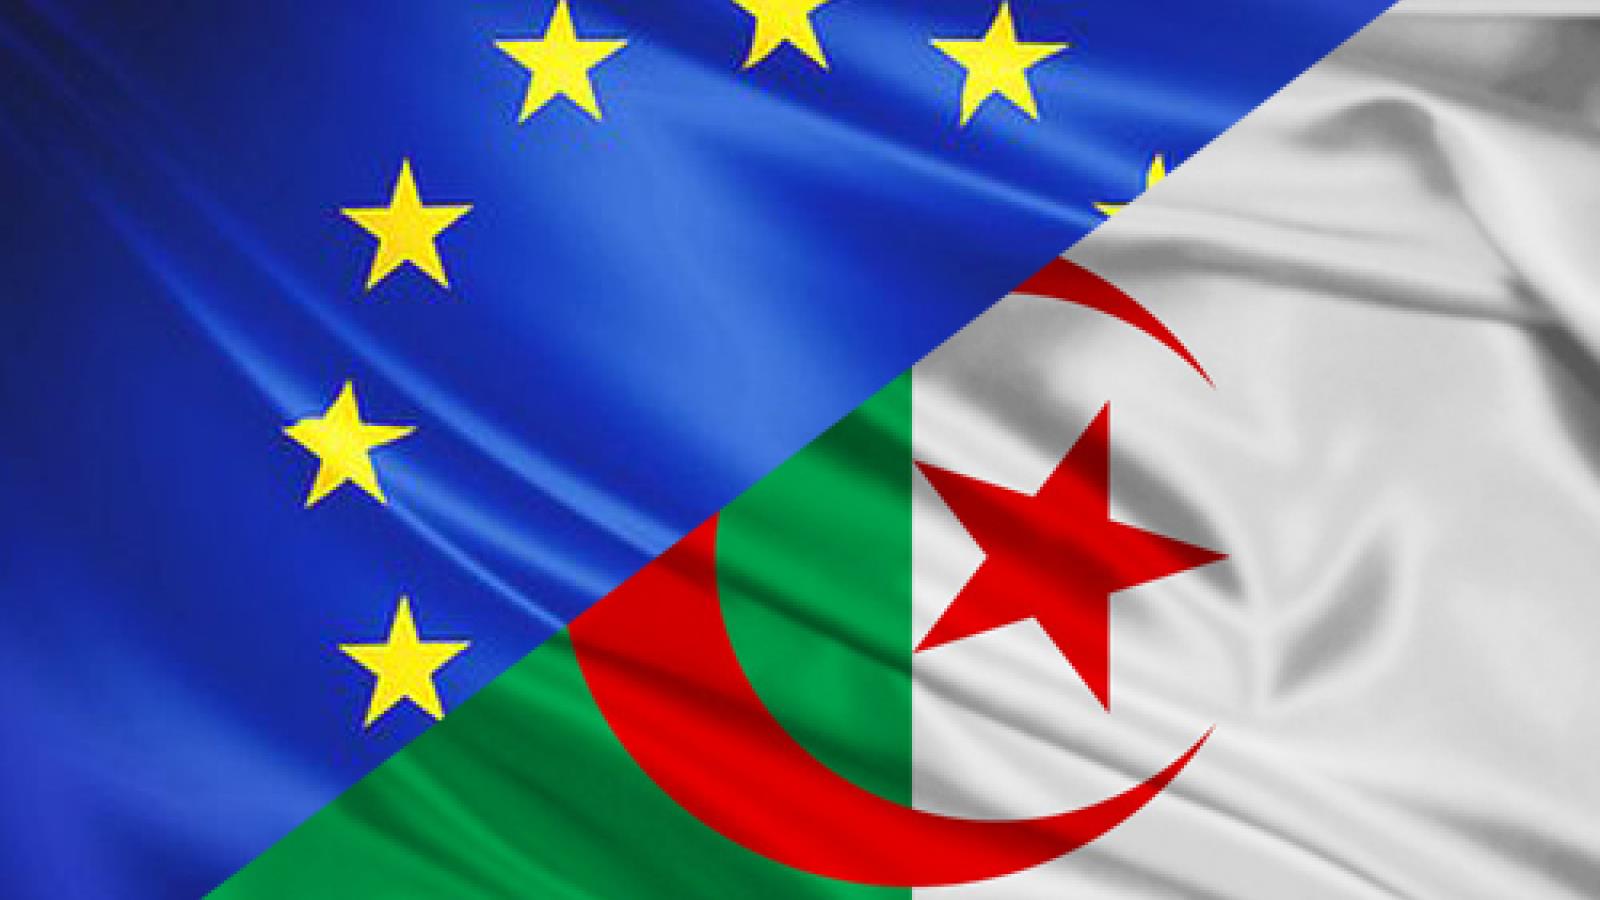 الاتحاد الأوروبي يتابع عن كثب وضعية حقوق الإنسان في الجزائر